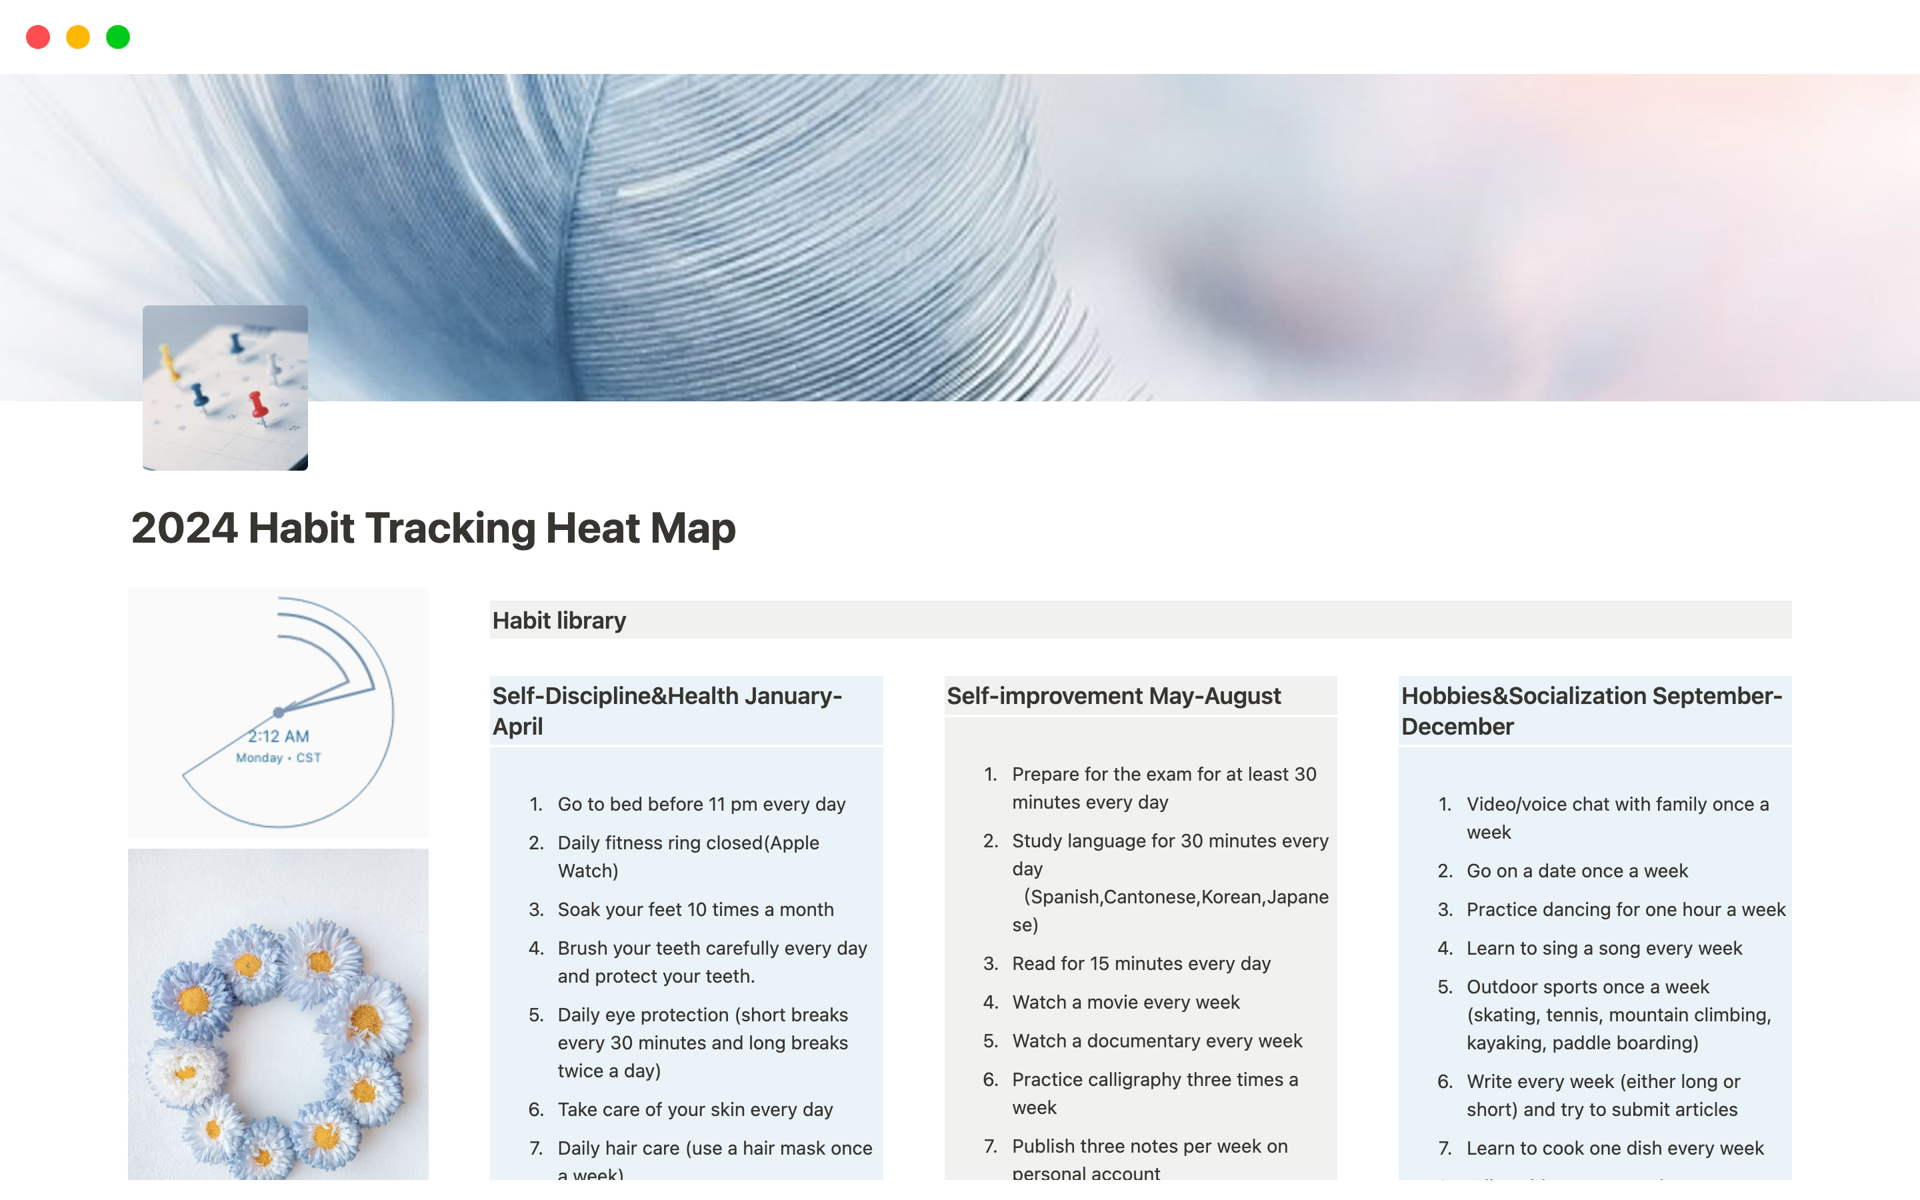 En förhandsgranskning av mallen för 2024 Habit Tracking Heat Map